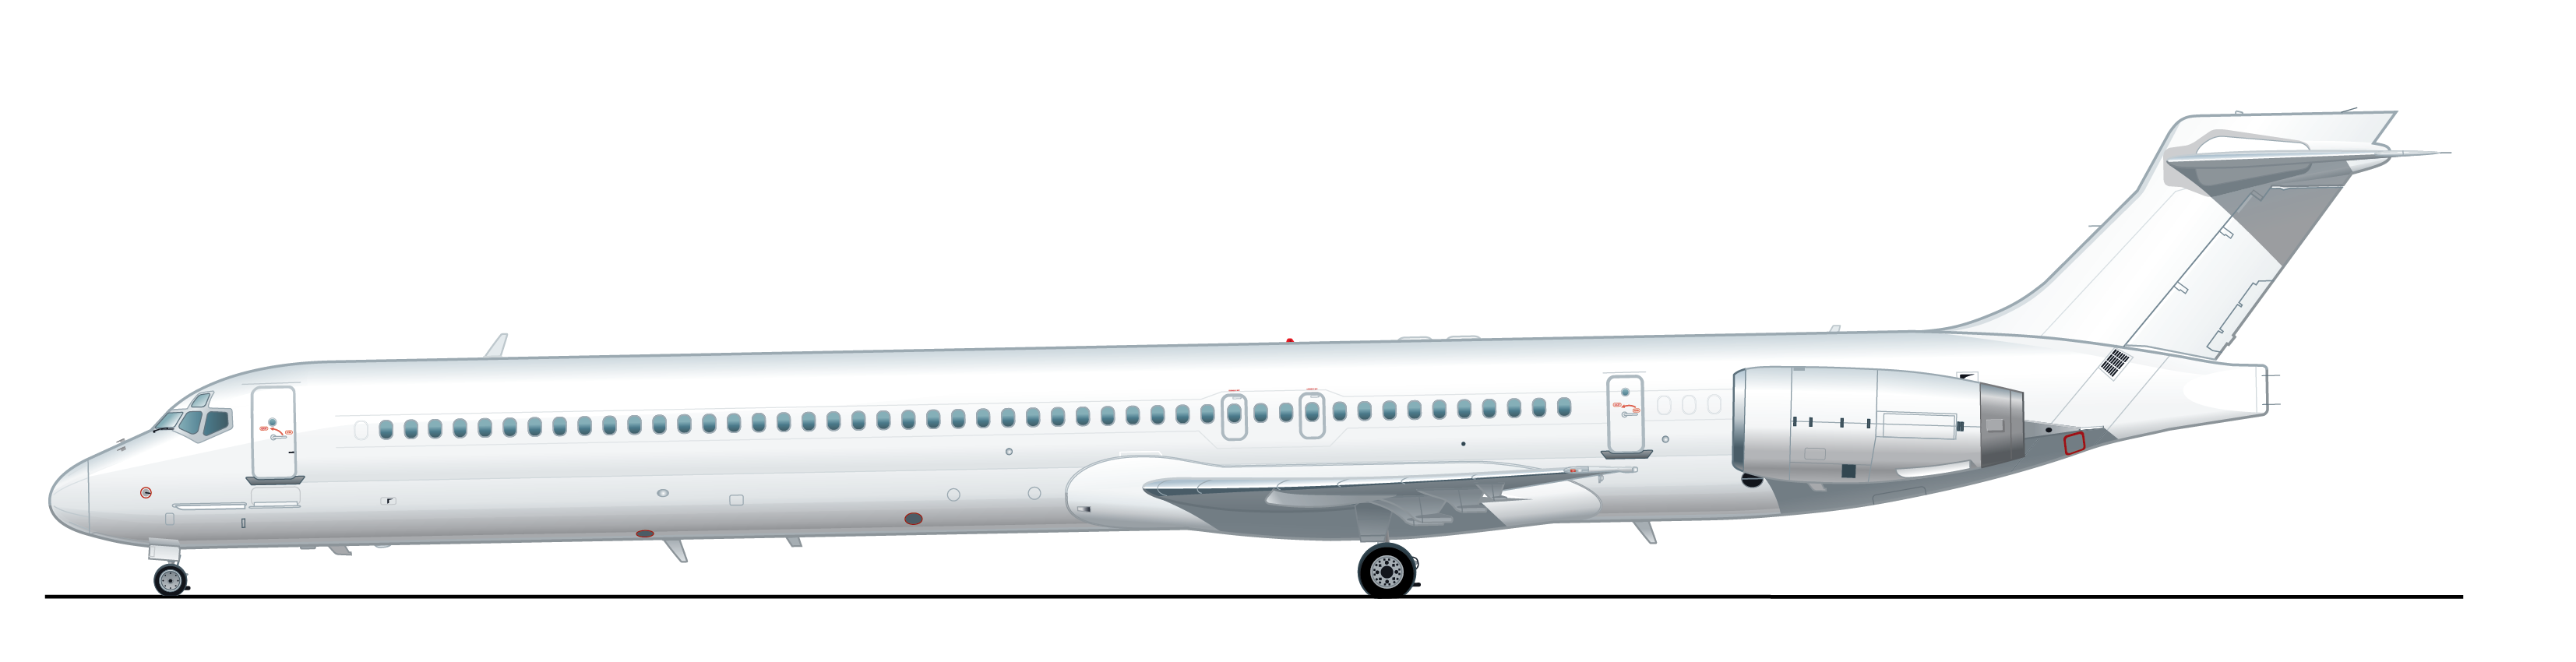 AAR MD-90